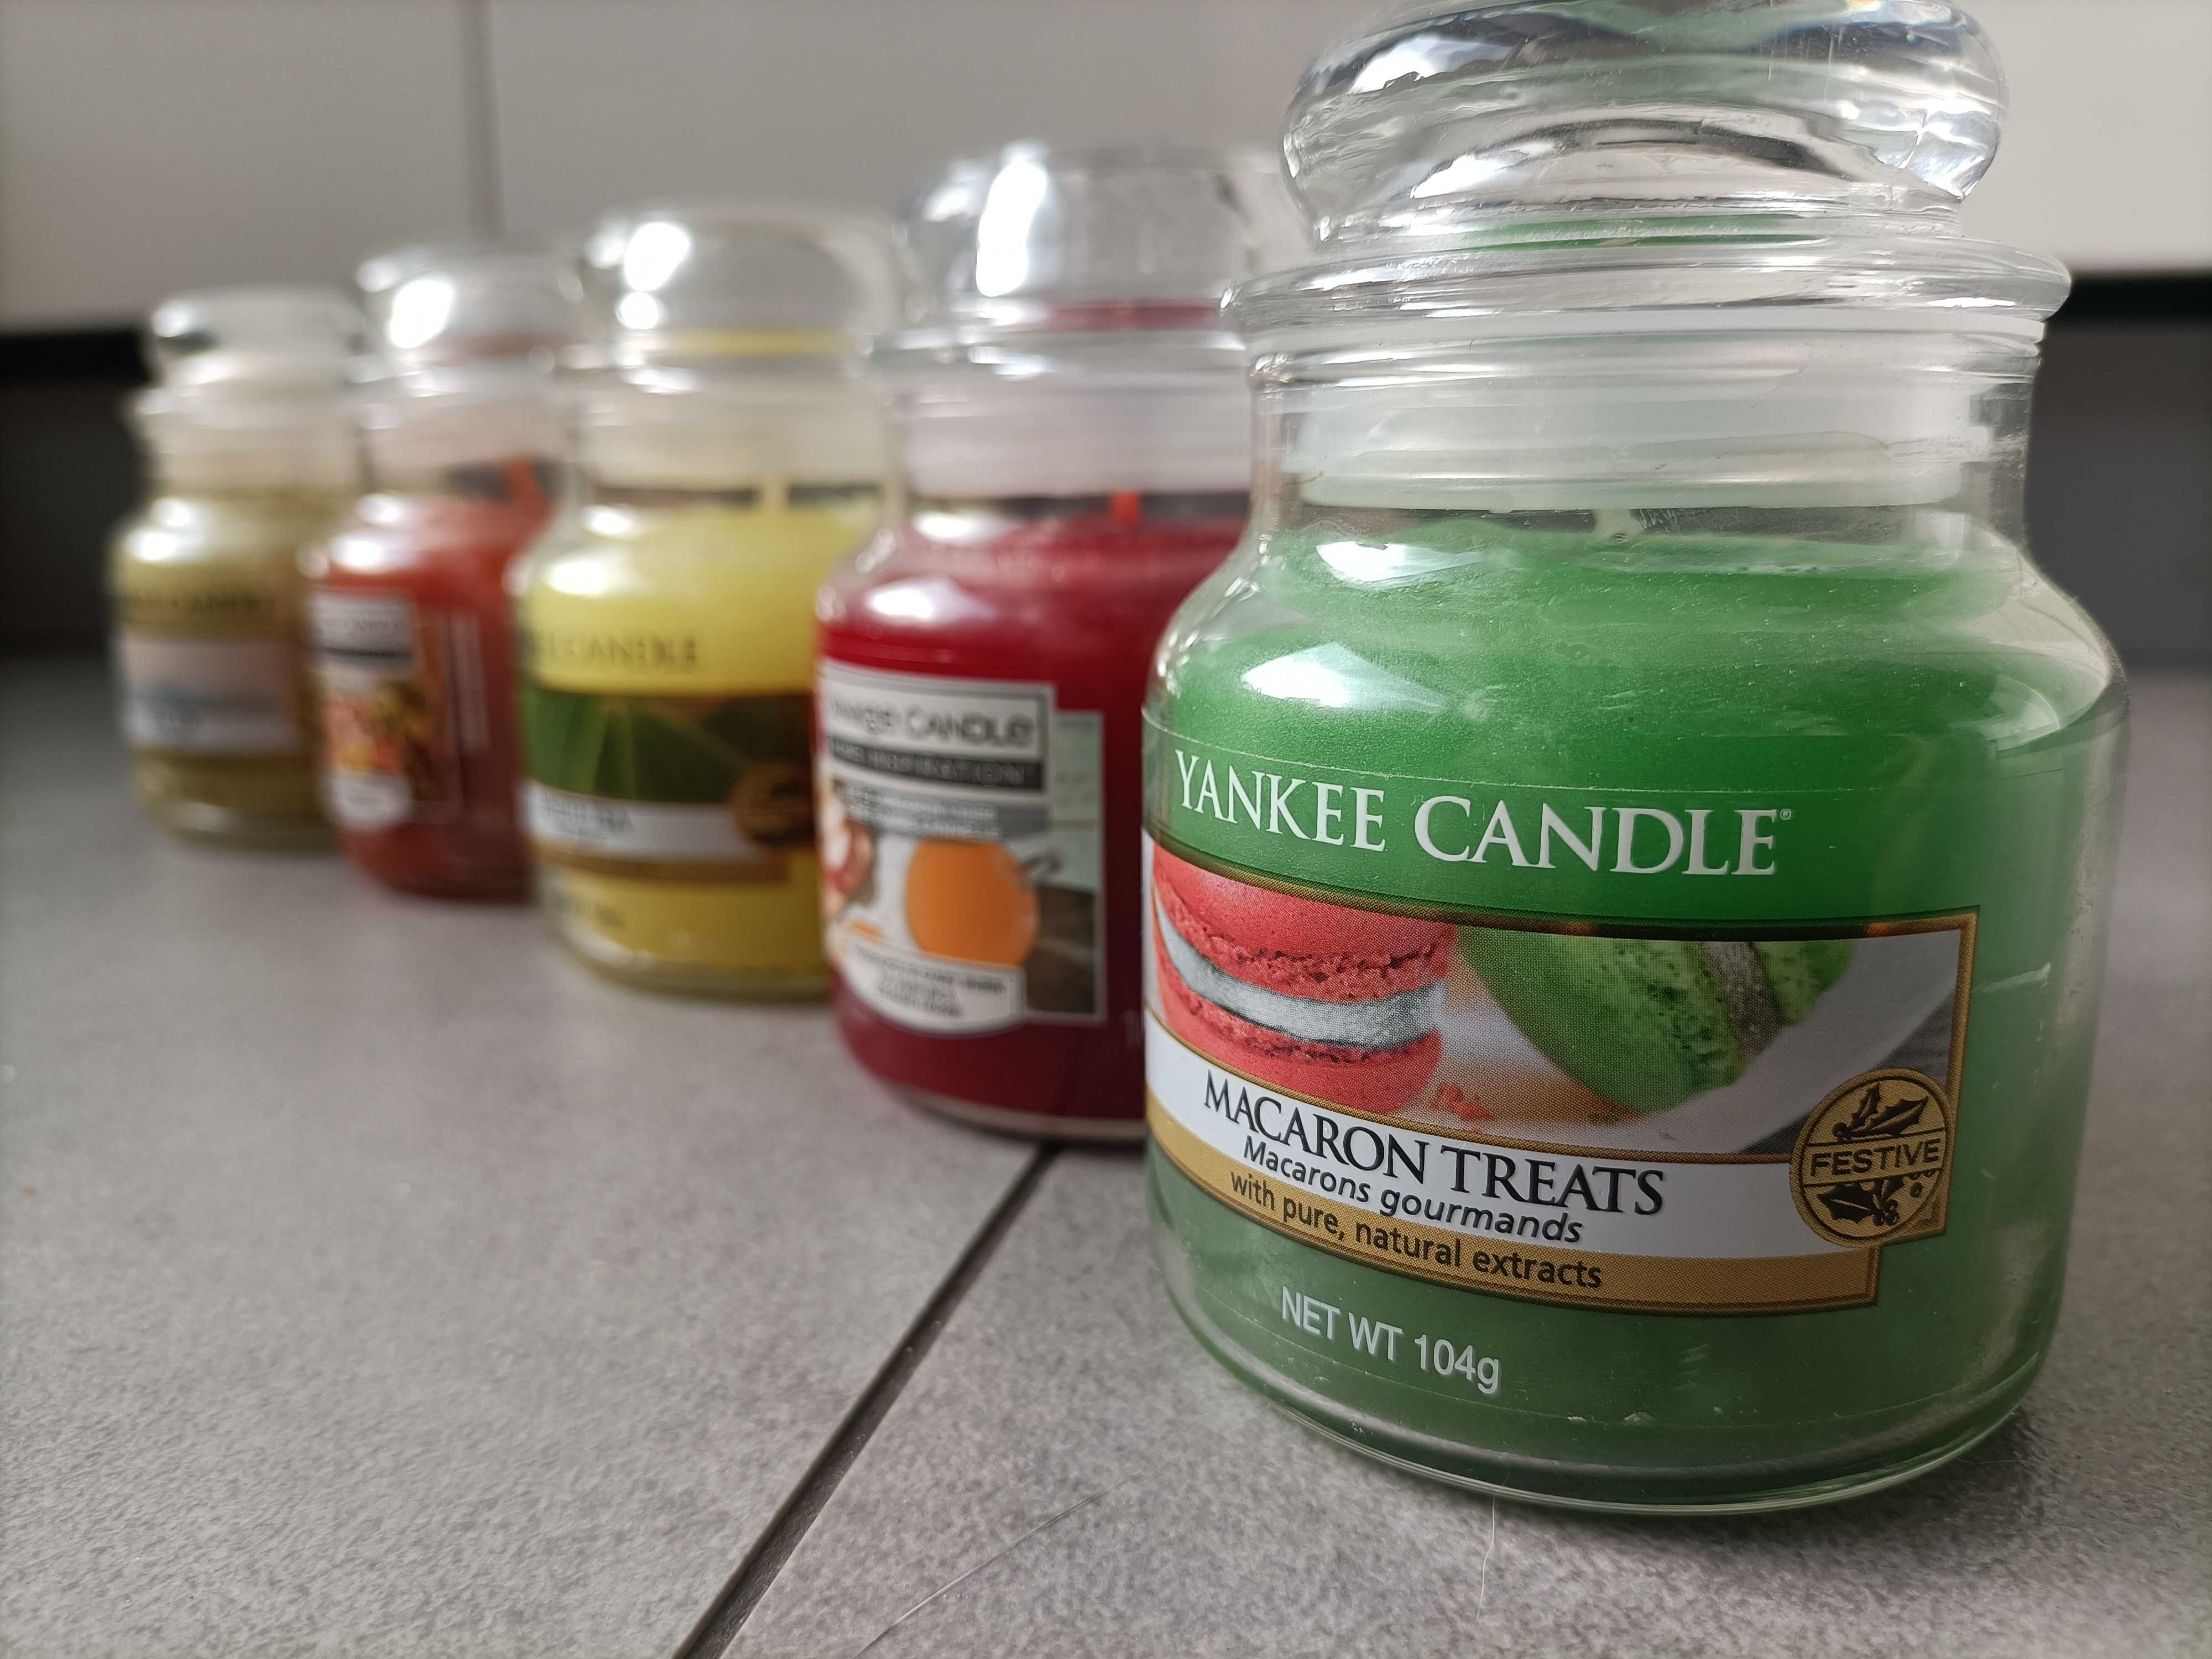 Świece, świeca zapachowa Yankee candle 5 sztuk NOWE